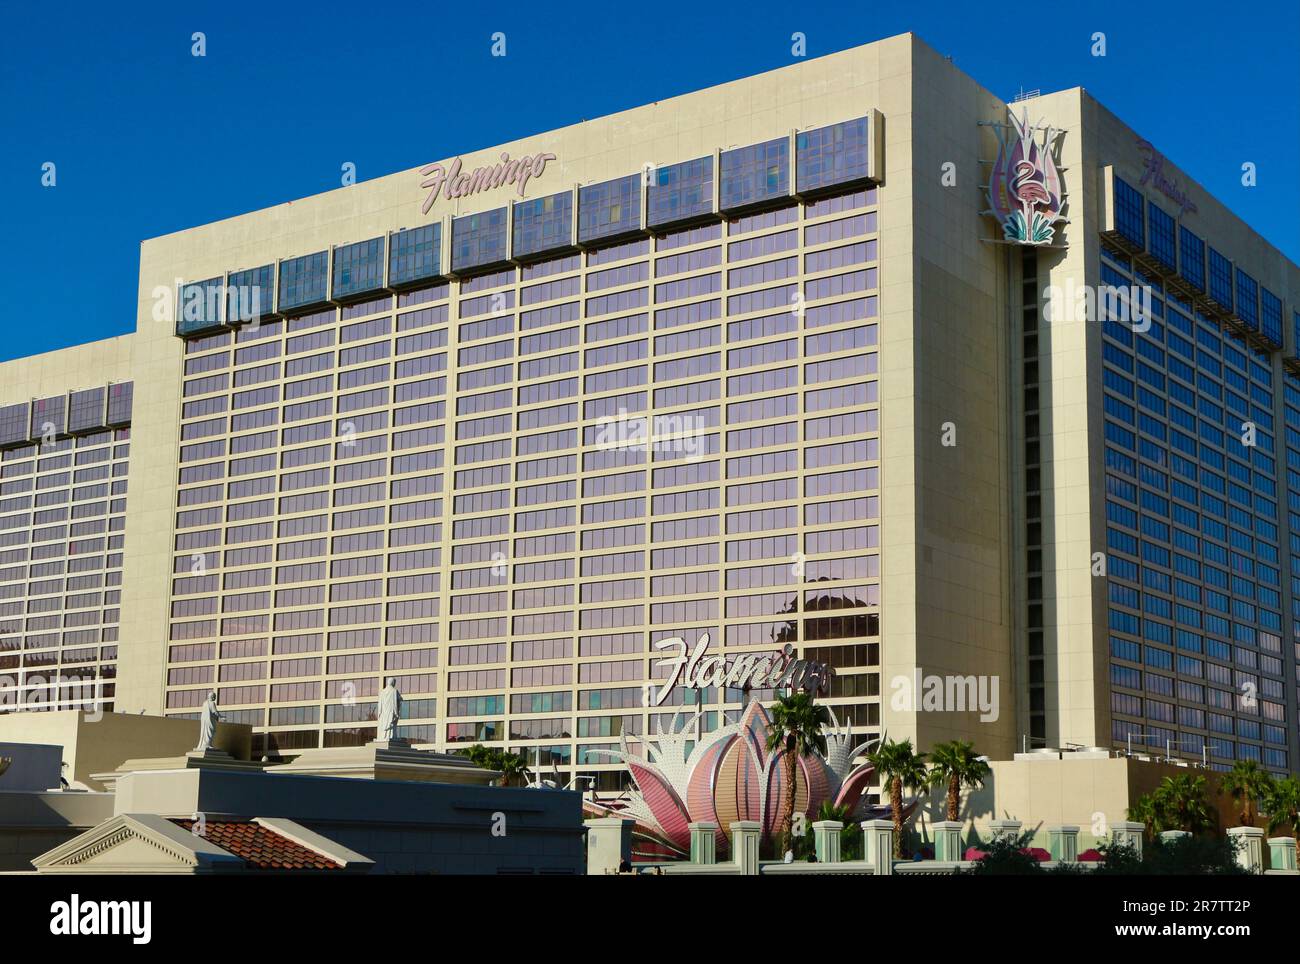 Flamingo Las Vegas hotel and casino Las Vegas Nevada USA Stock Photo